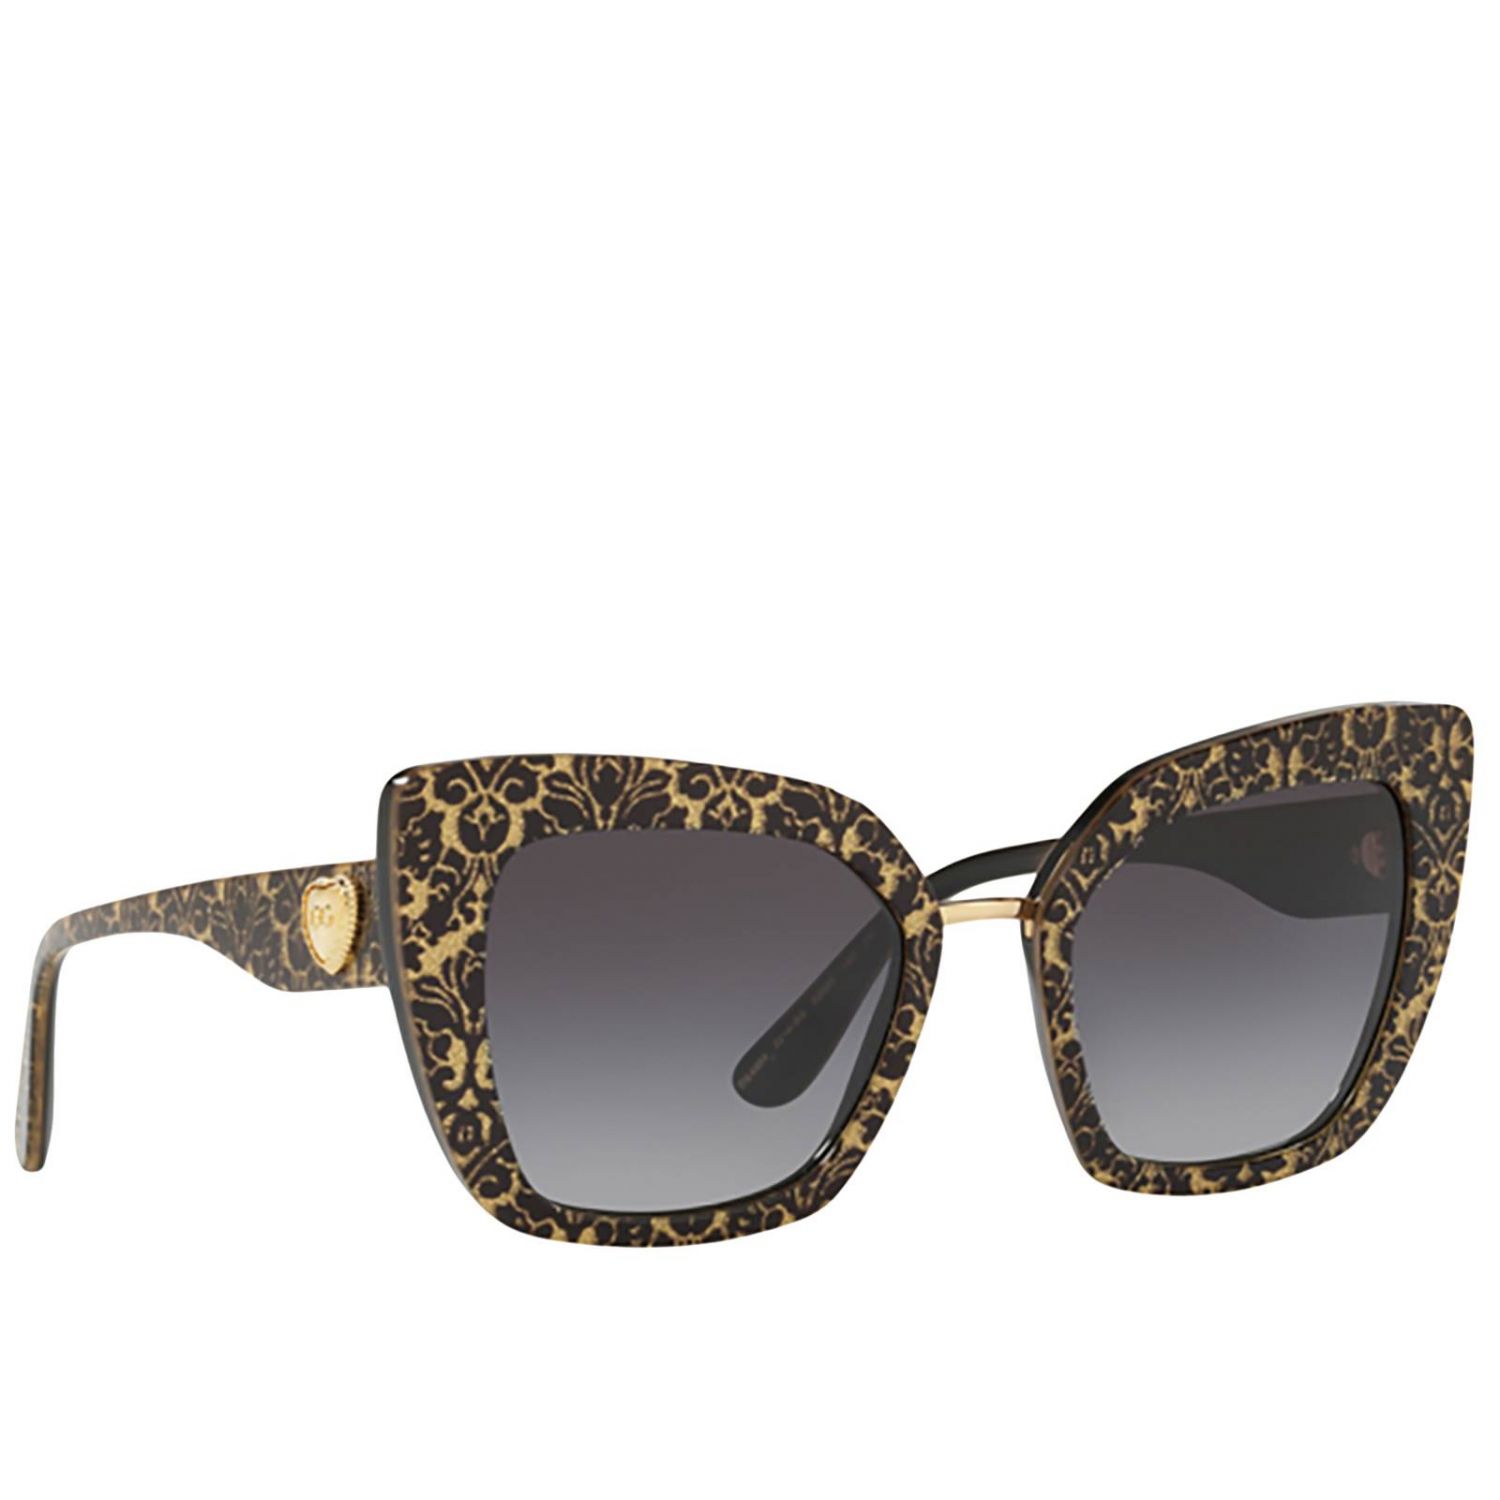 Солнцезащитные очки dolce. Очки Dolce Gabbana dg2105. DG 4359 501/8g очки. Очки Dolce Gabbana dg2064. Dolce Gabbana dg4359.